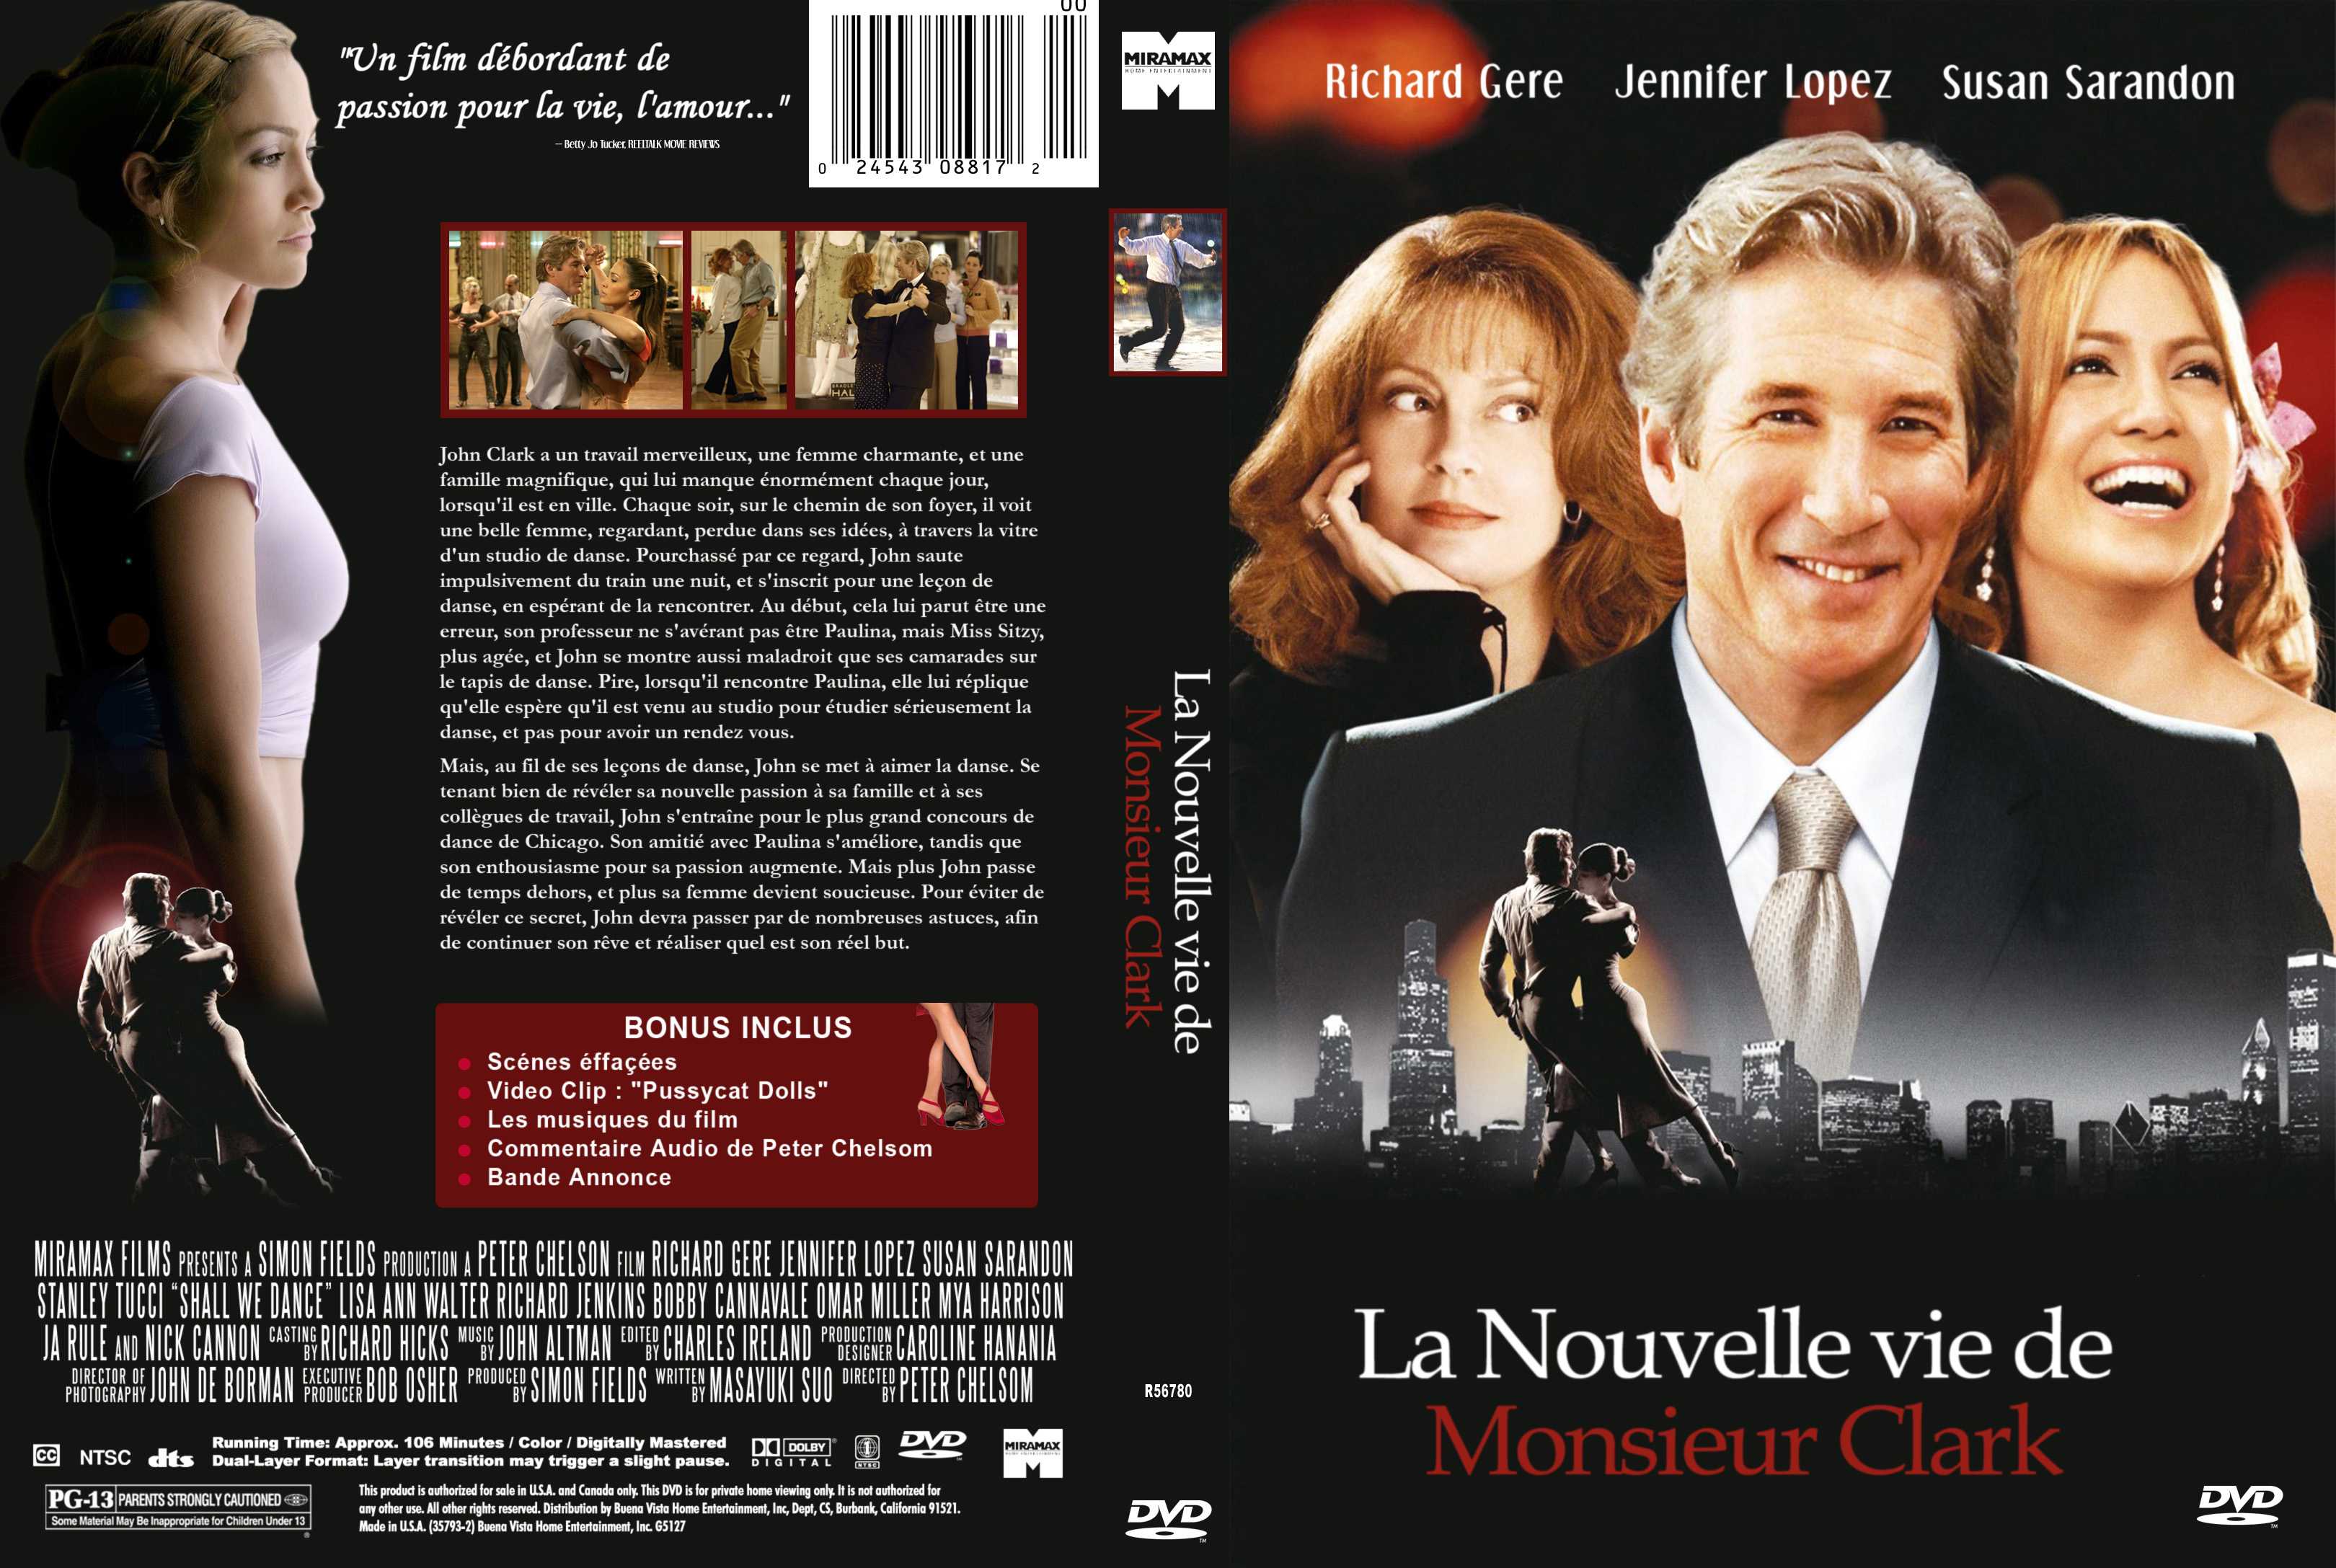 Jaquette DVD La nouvelle vie de monsieur Clark